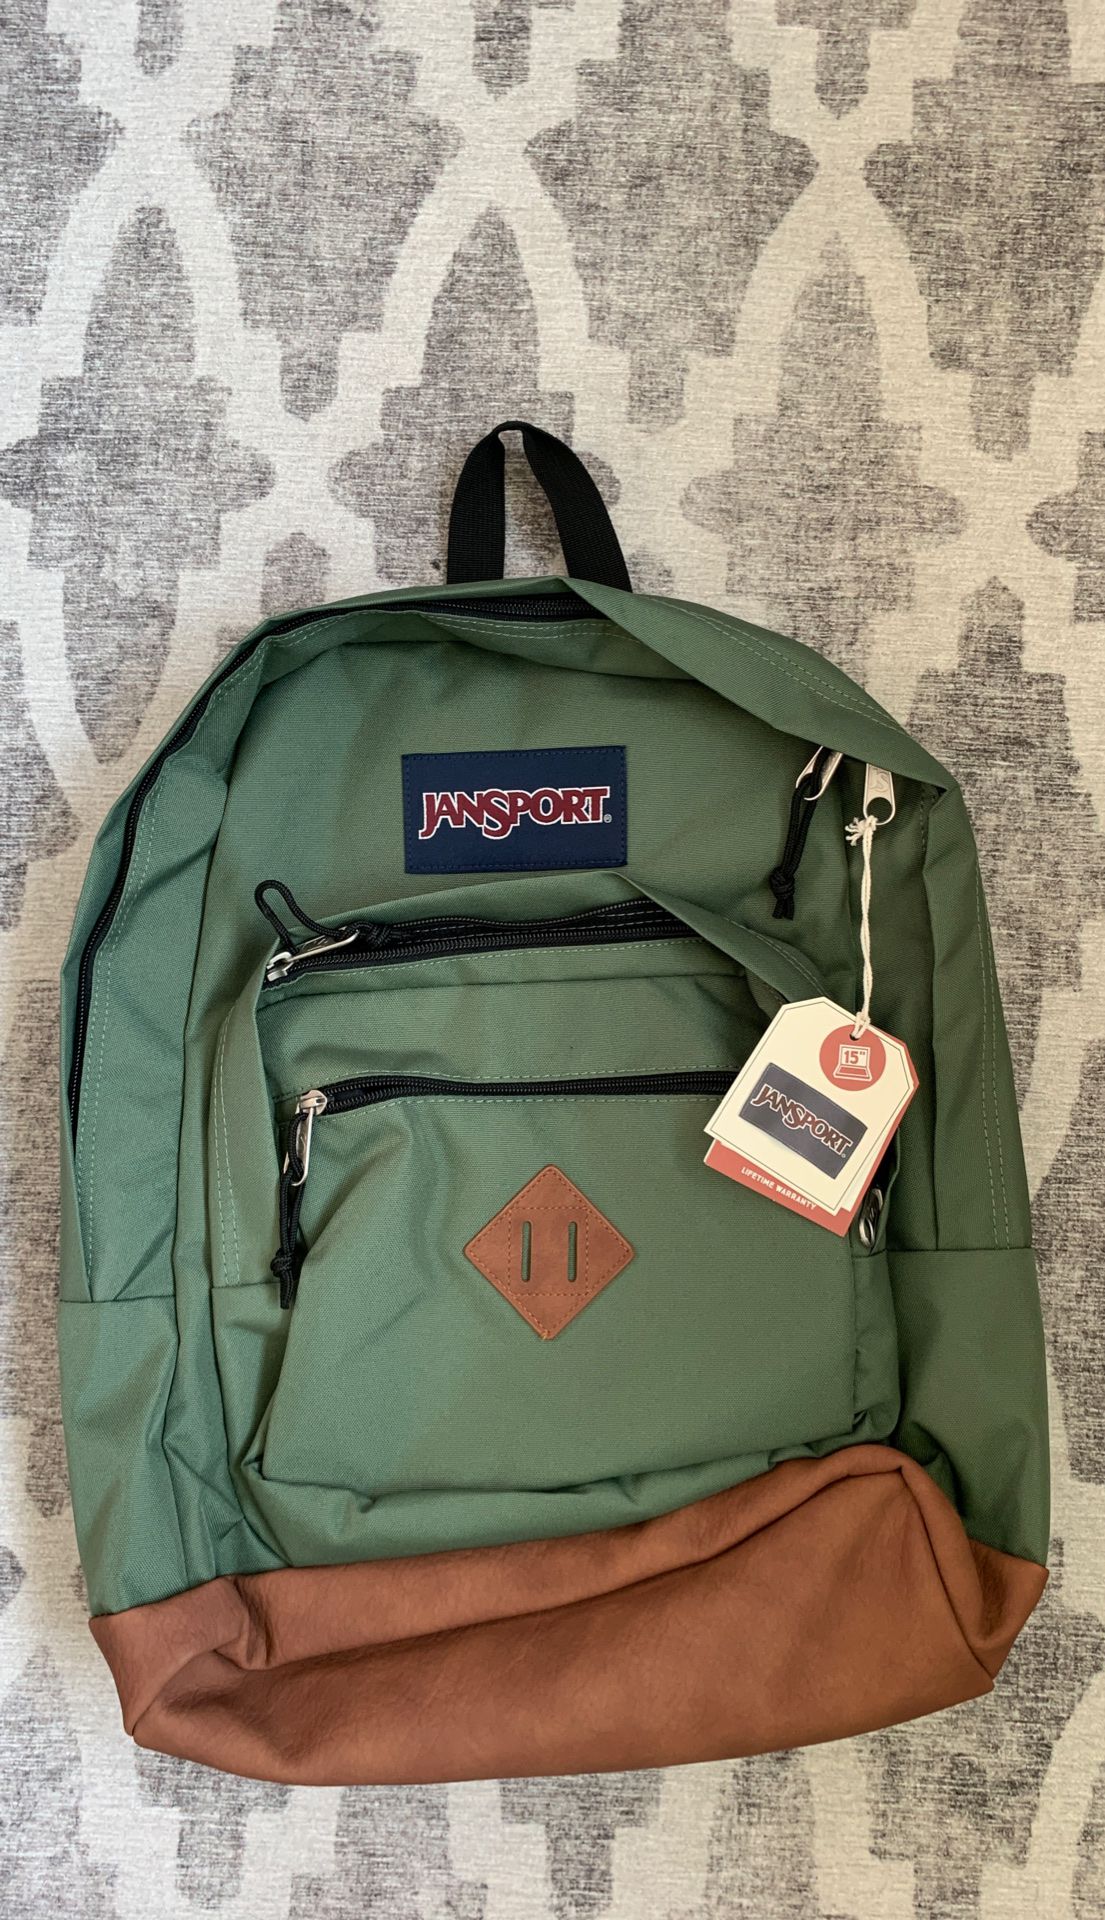 jansport backpack - new